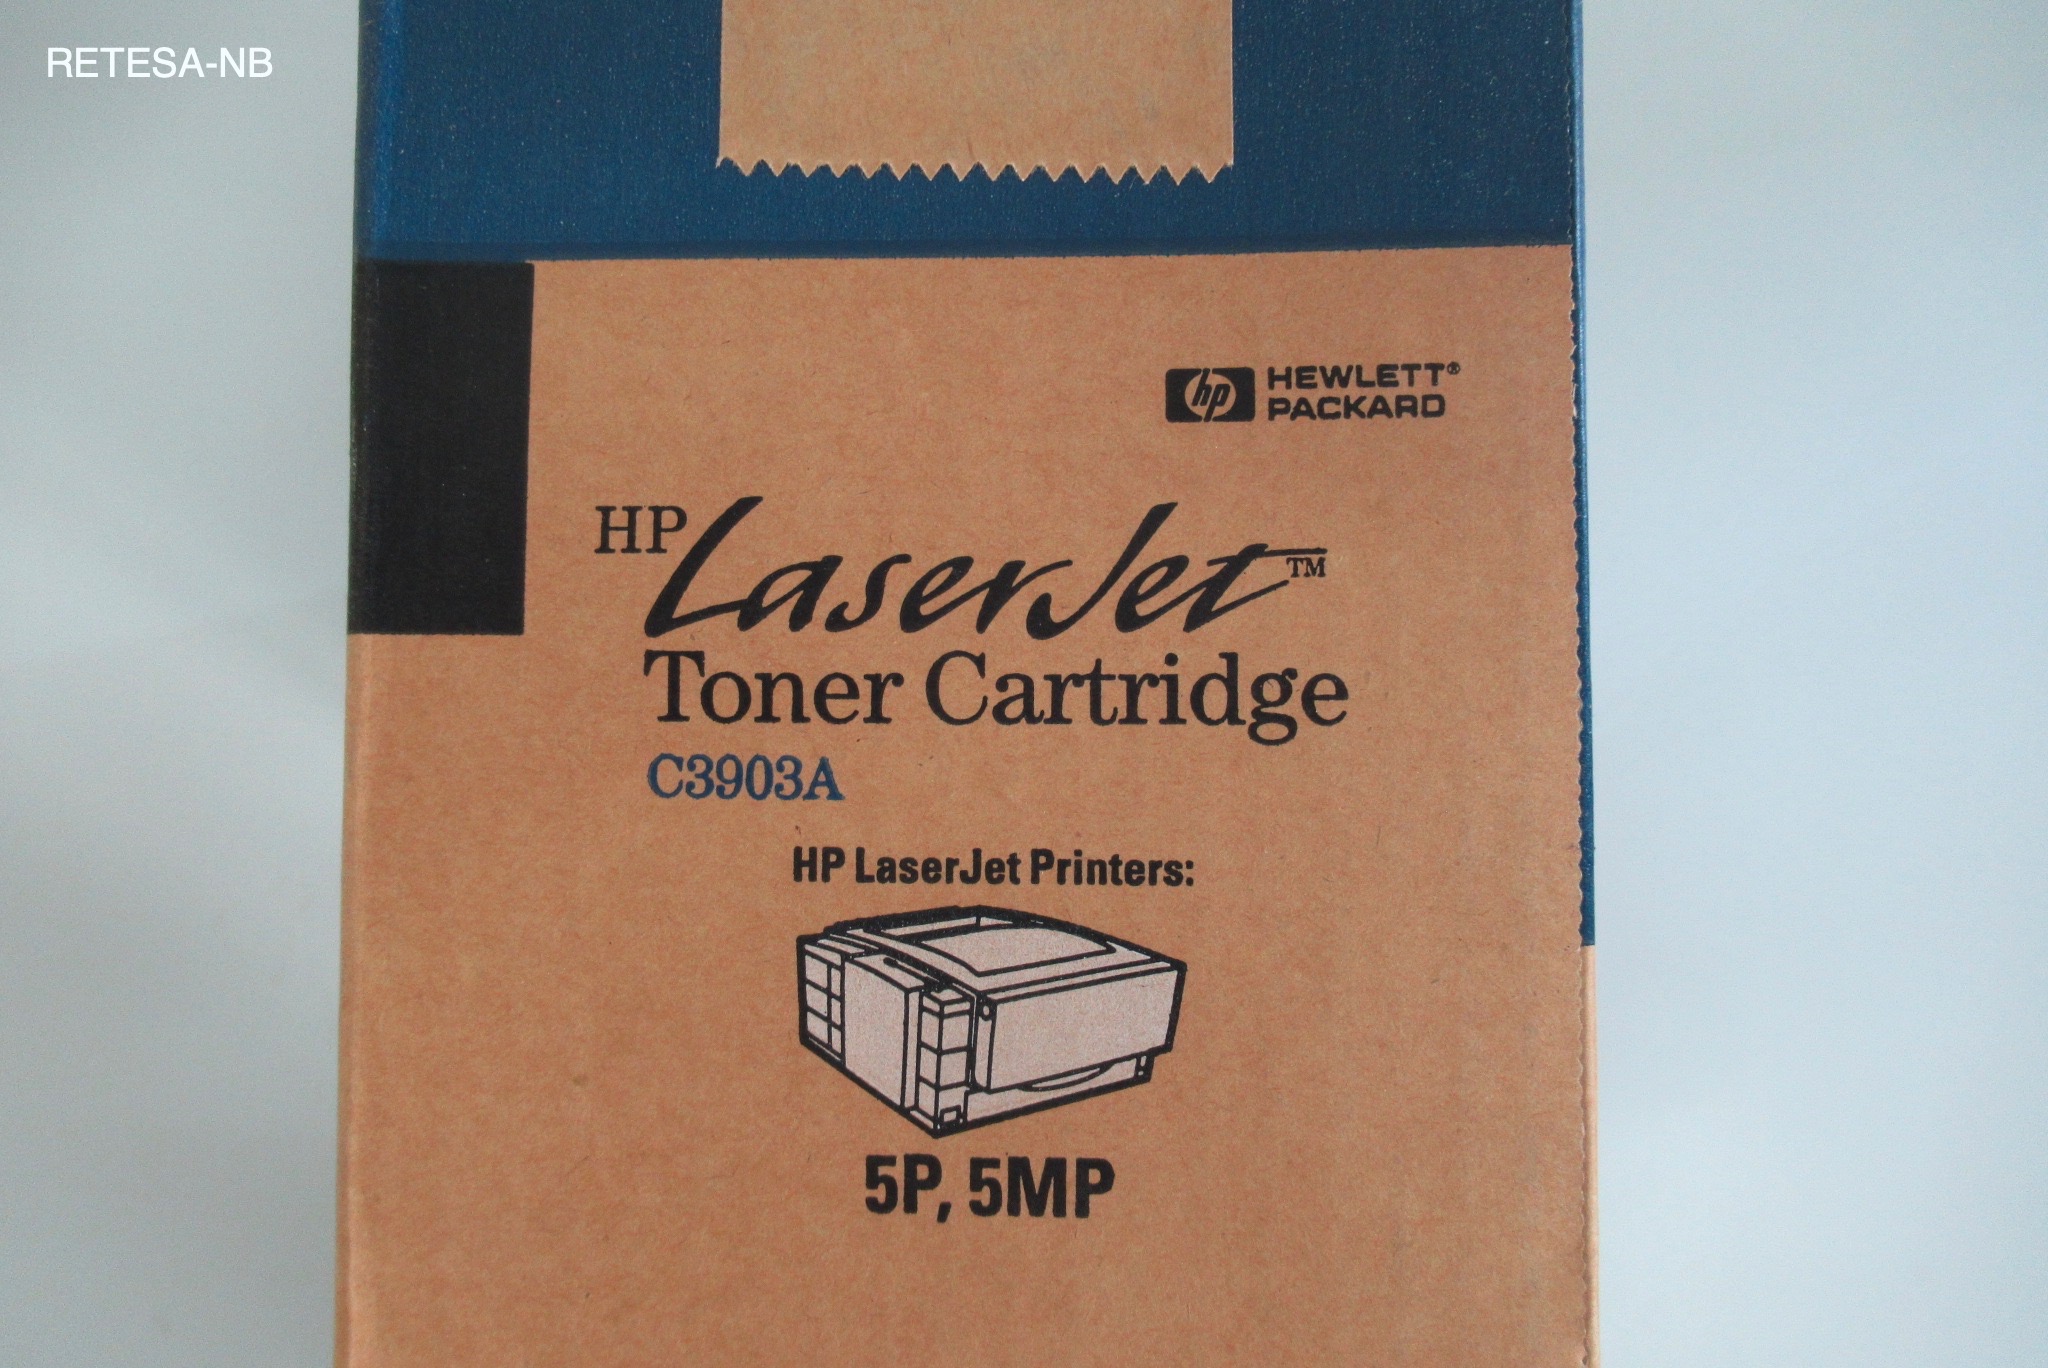 Toner HP C3903A für LaserJet 5P/MP/6P/6MP schwarz